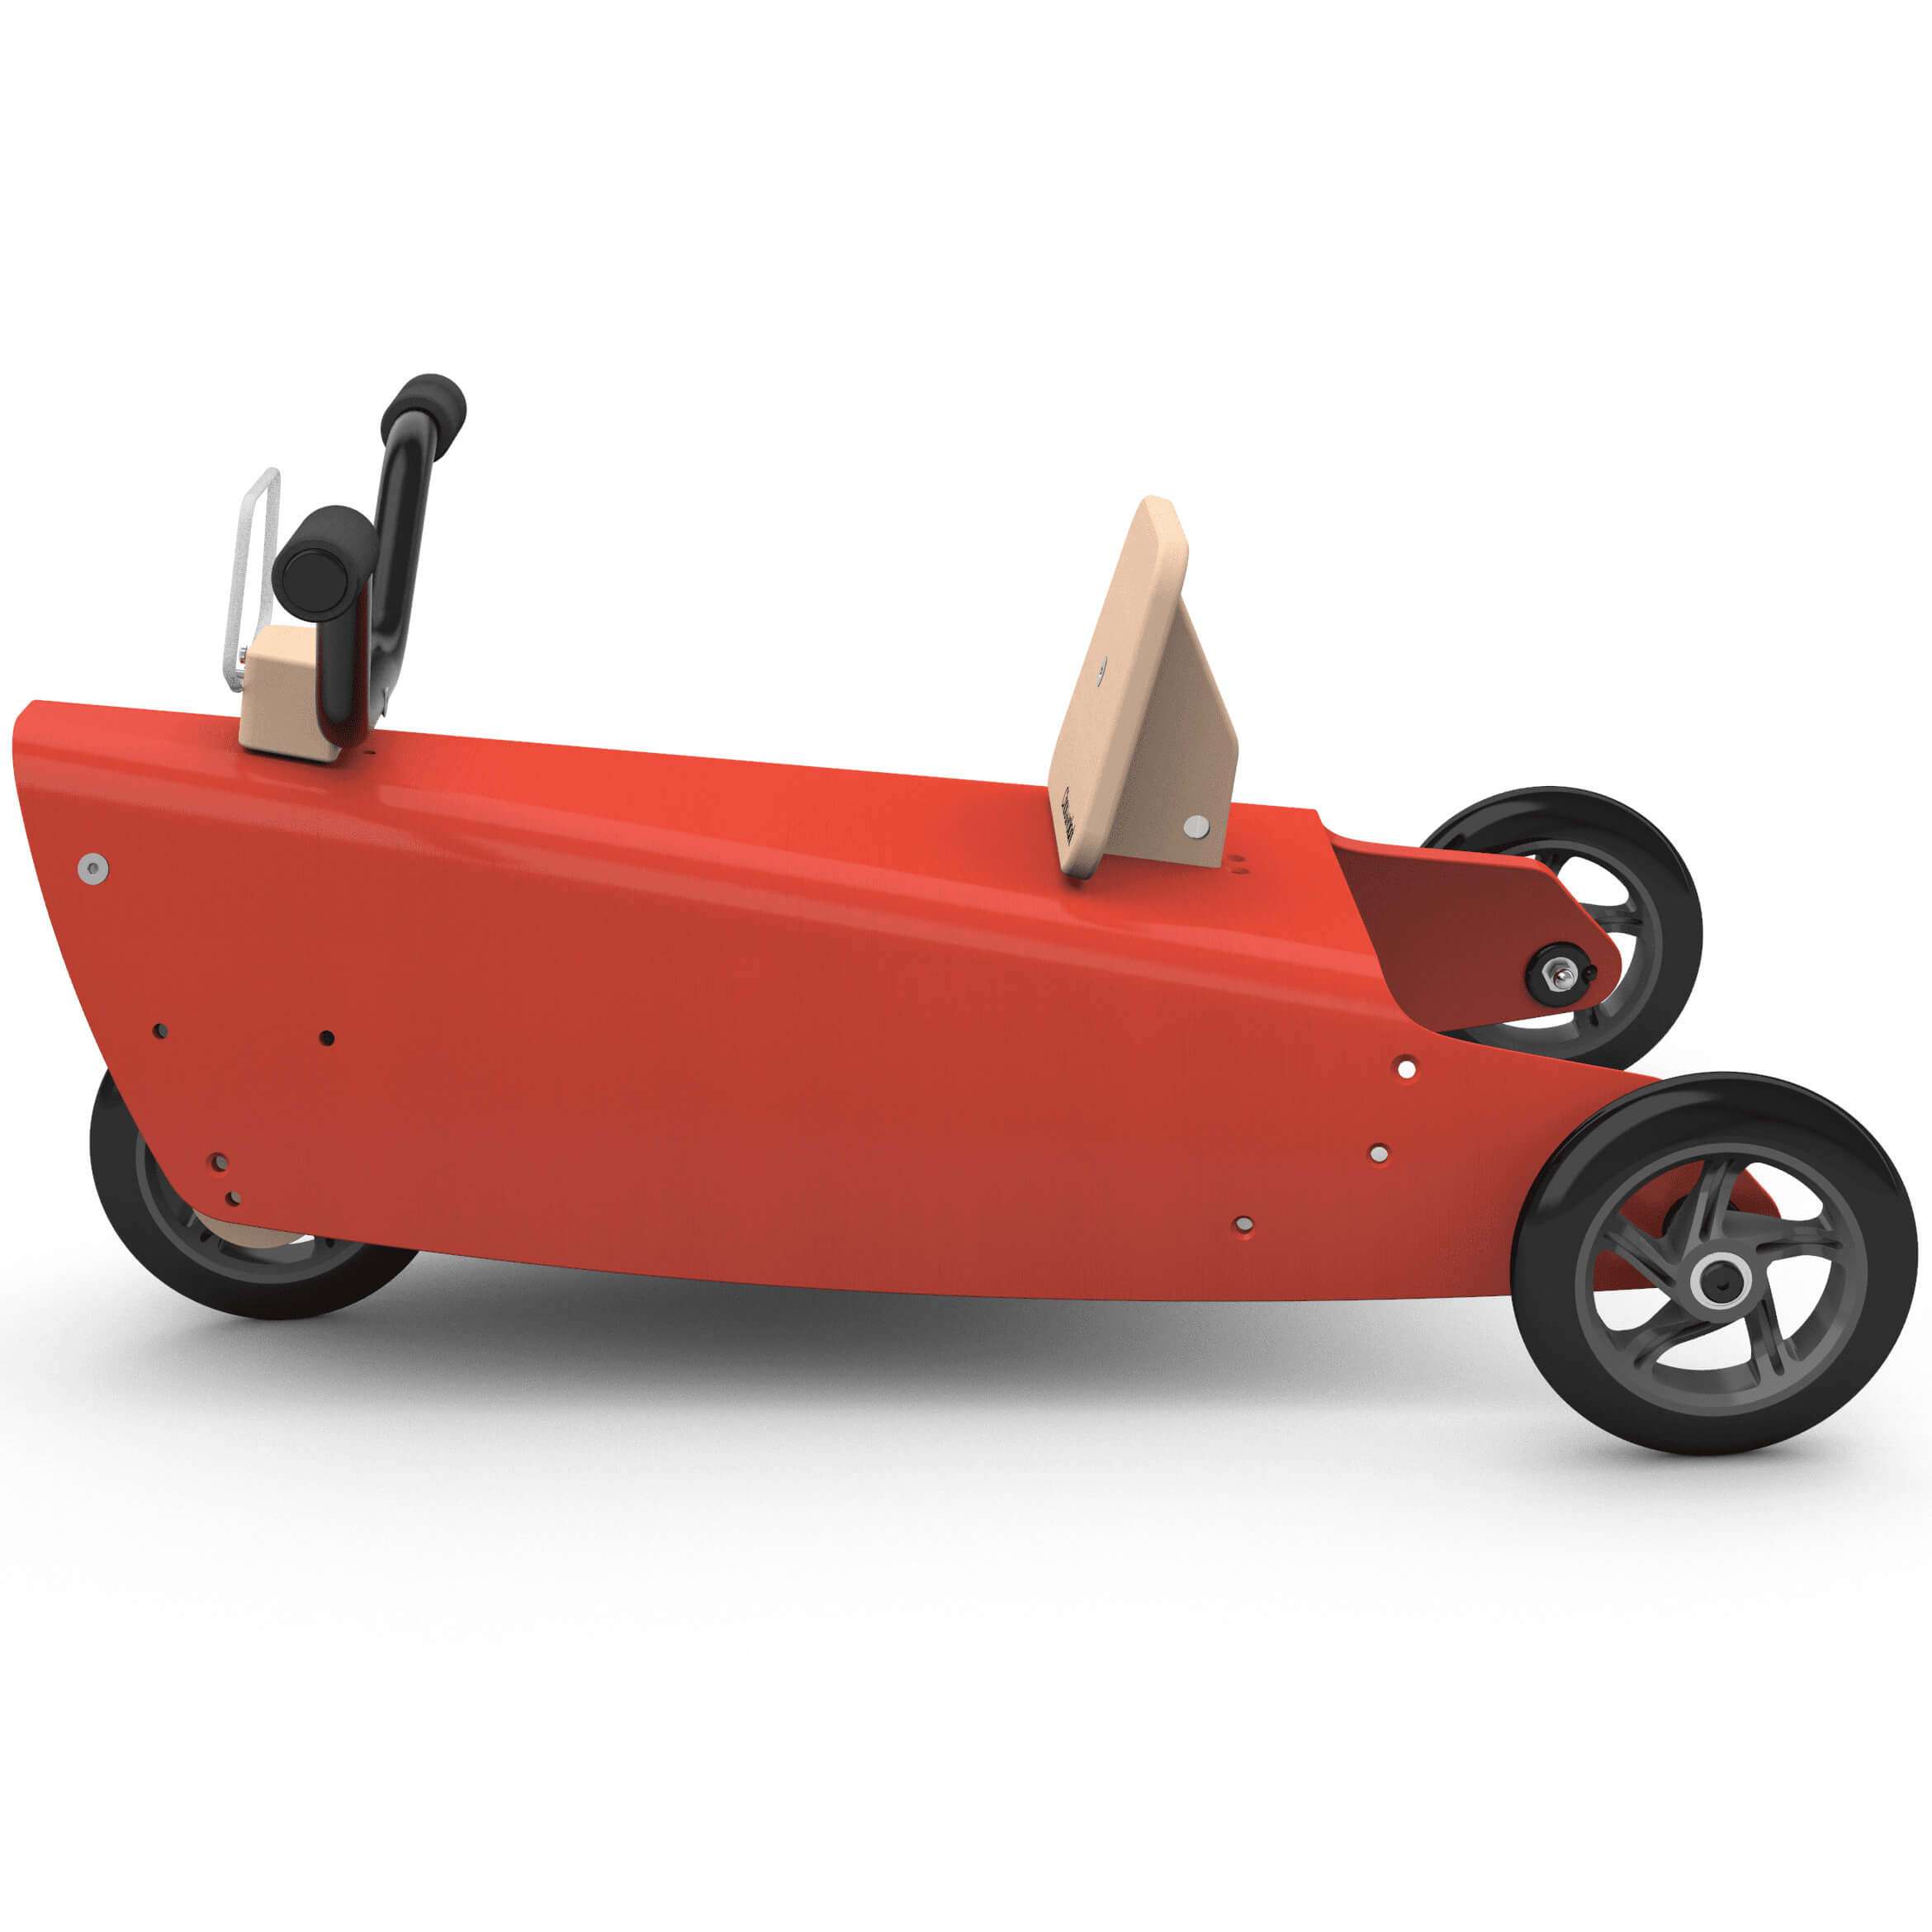 Porteur moto en bois design made in france rouge 2